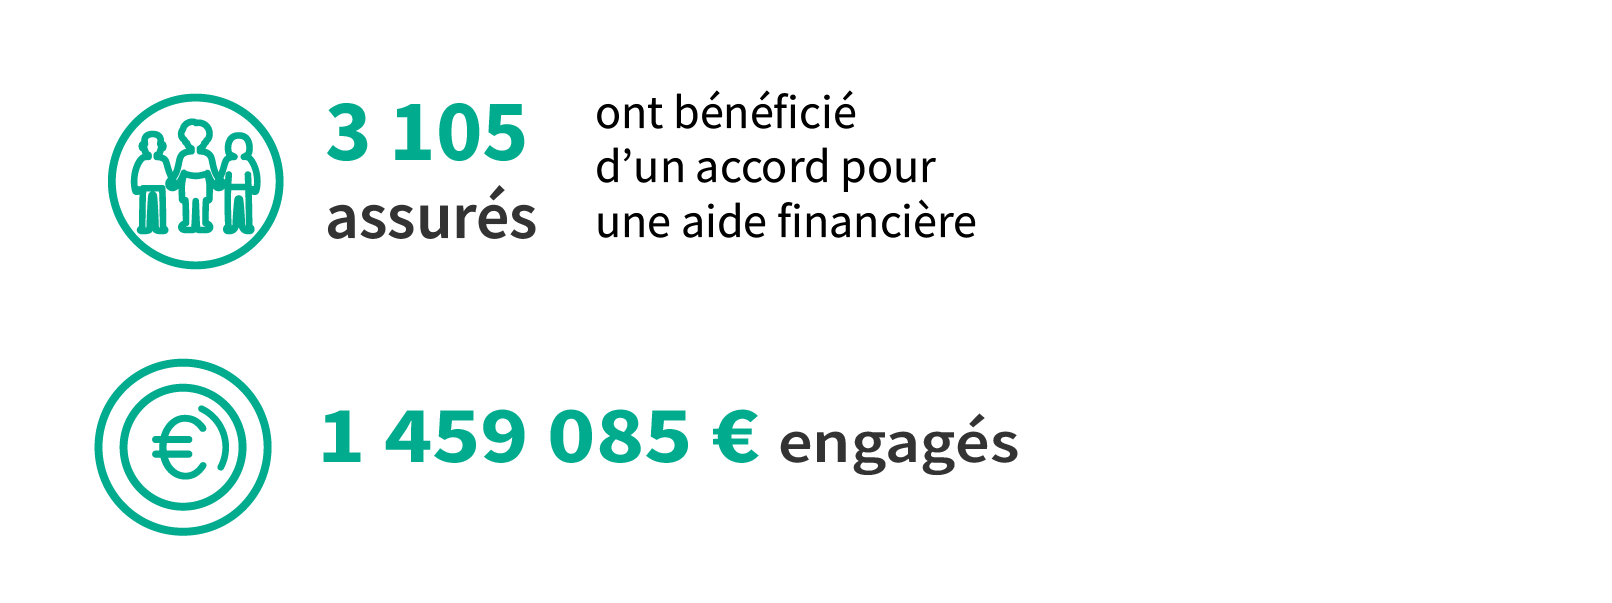 En 2022, 3 105 assurés ont bénéficié d’un accord pour une aide financière pour un montant total de 1 459 085 euros.